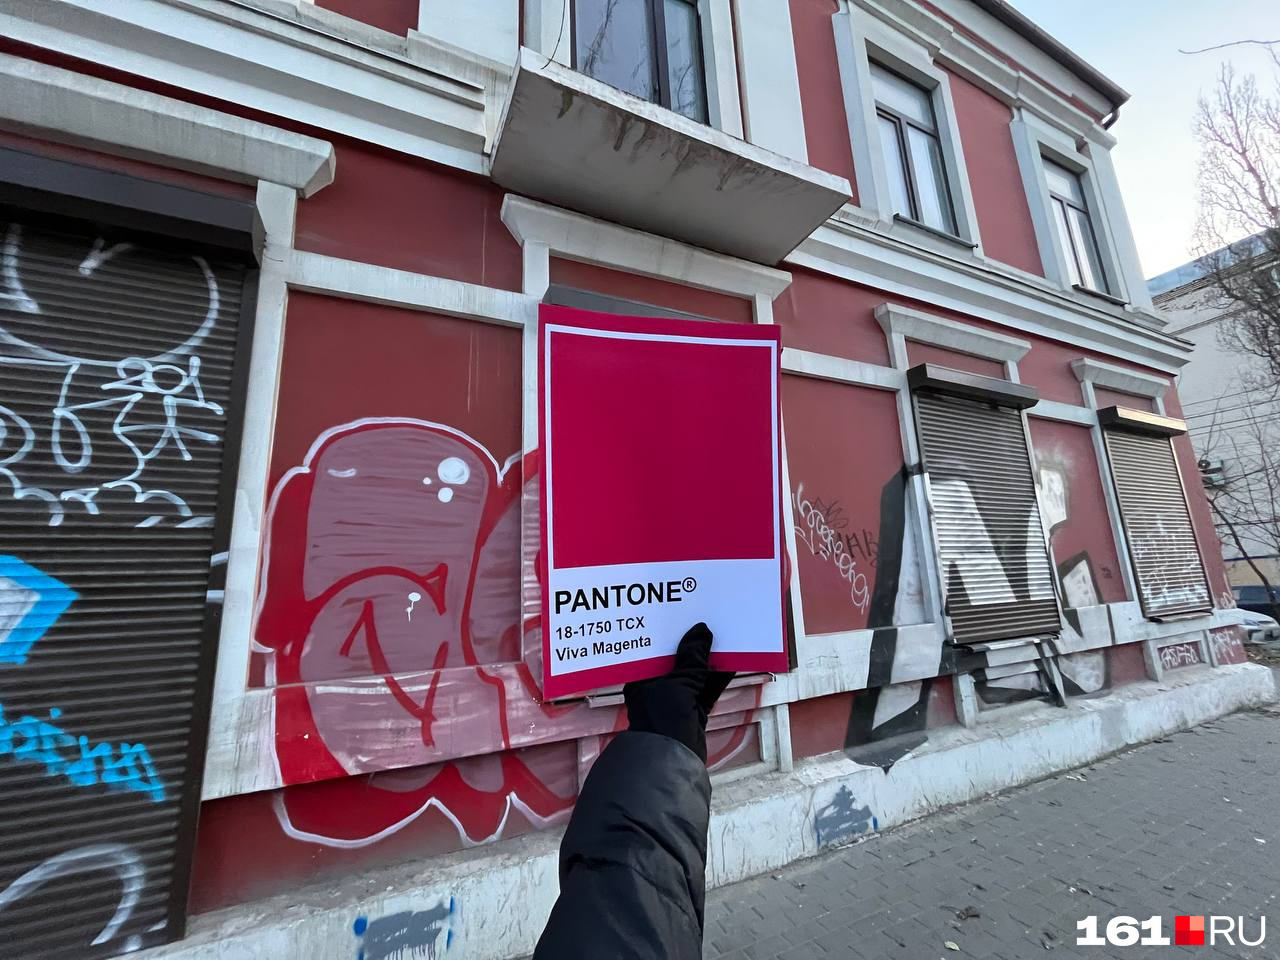 Граффити на Чехова, 92 в трендах от Pantone